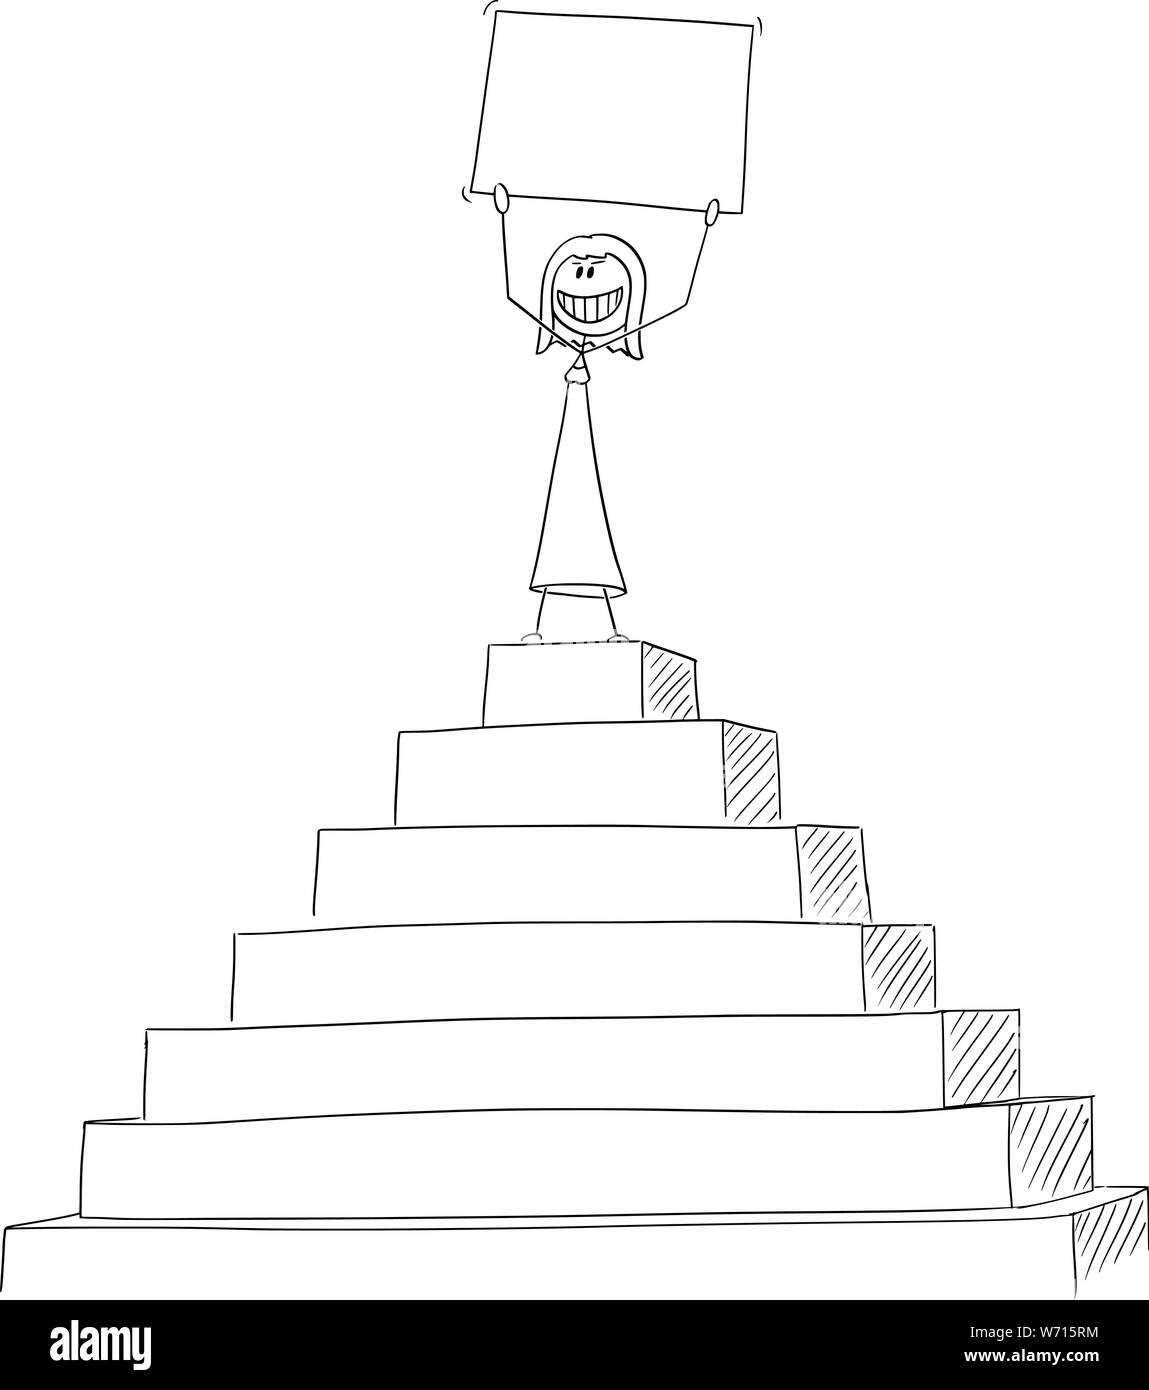 Vektor cartoon Strichmännchen Zeichnung konzeptuelle Abbildung: erfolgreiche Frau oder Geschäftsfrau Erfolg feiern auf der Spitze der Pyramide mit leeren Zeichen in den Händen. Stock Vektor